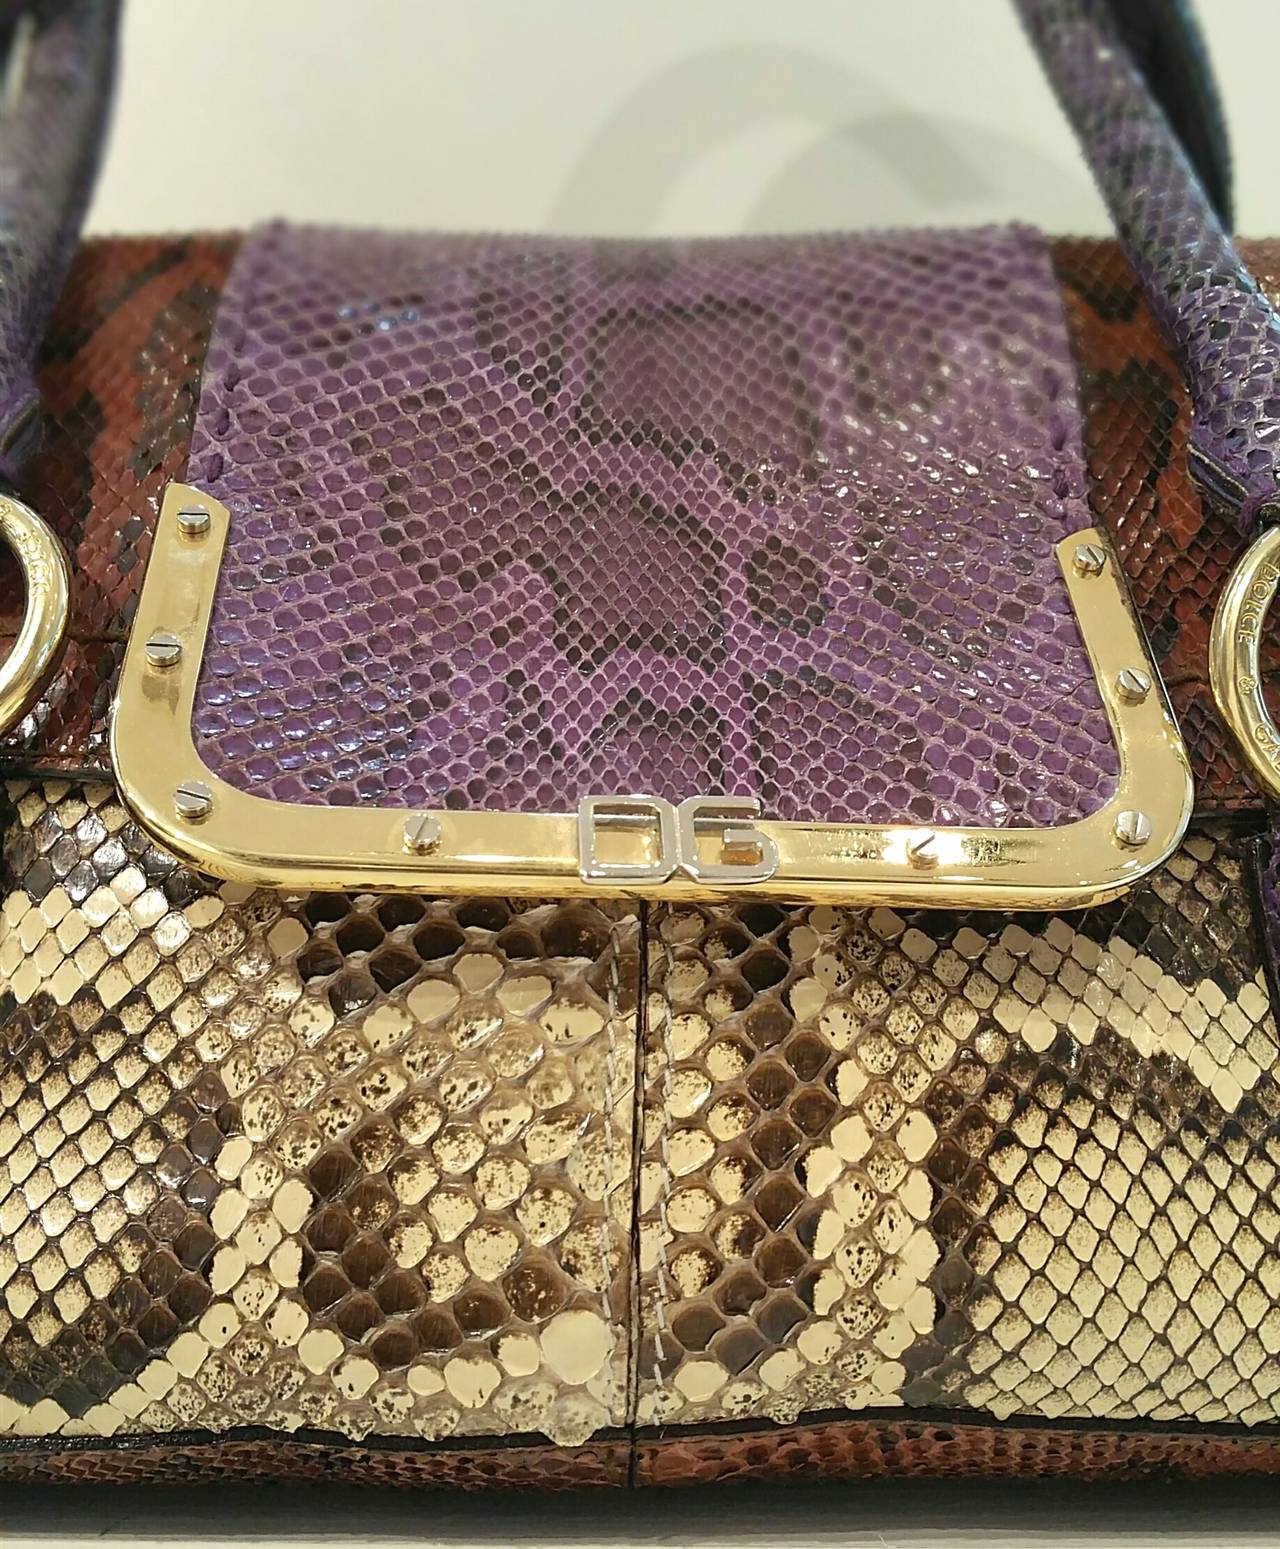 Brown 2000 Dolce & Gabbana Python Skin Bag